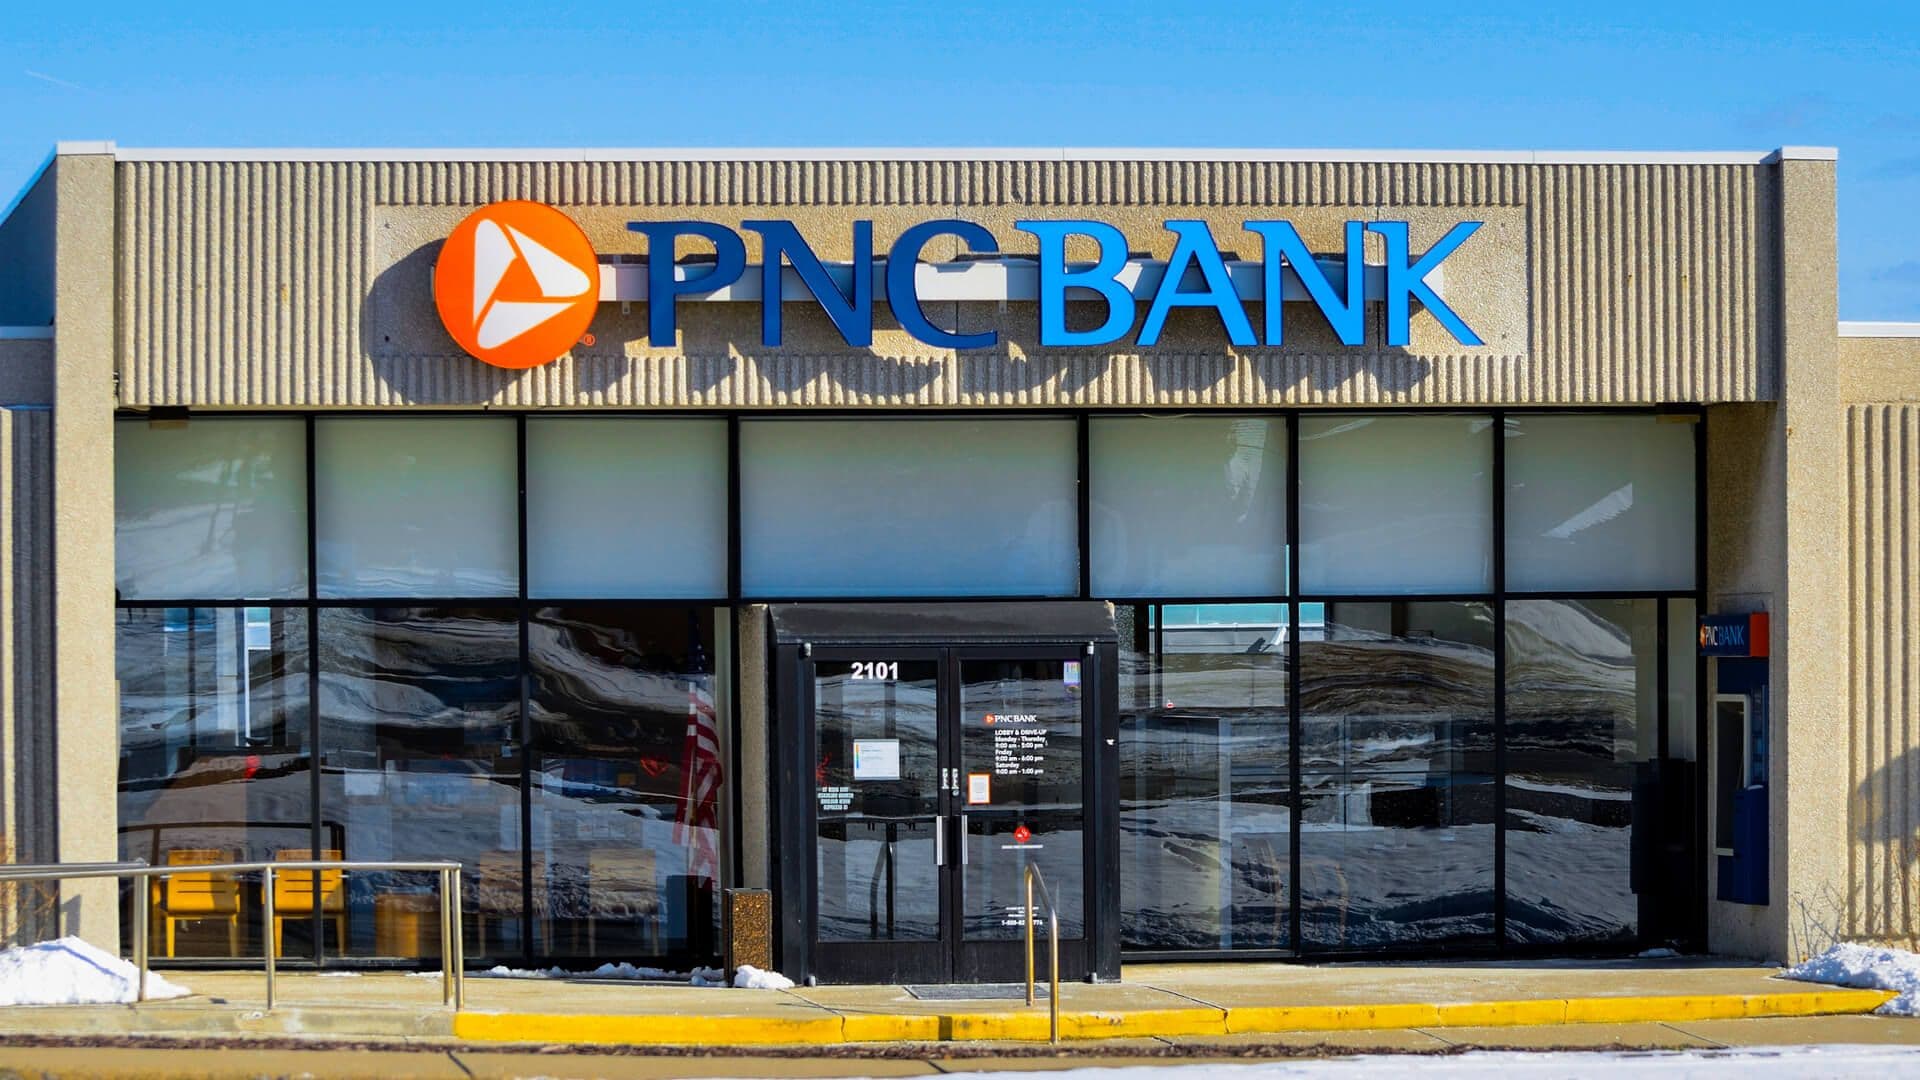 PNC Bank where you can get different cards including PNC Cash Rewards, PNC Core, PNC Points, PNC Premier Traveler